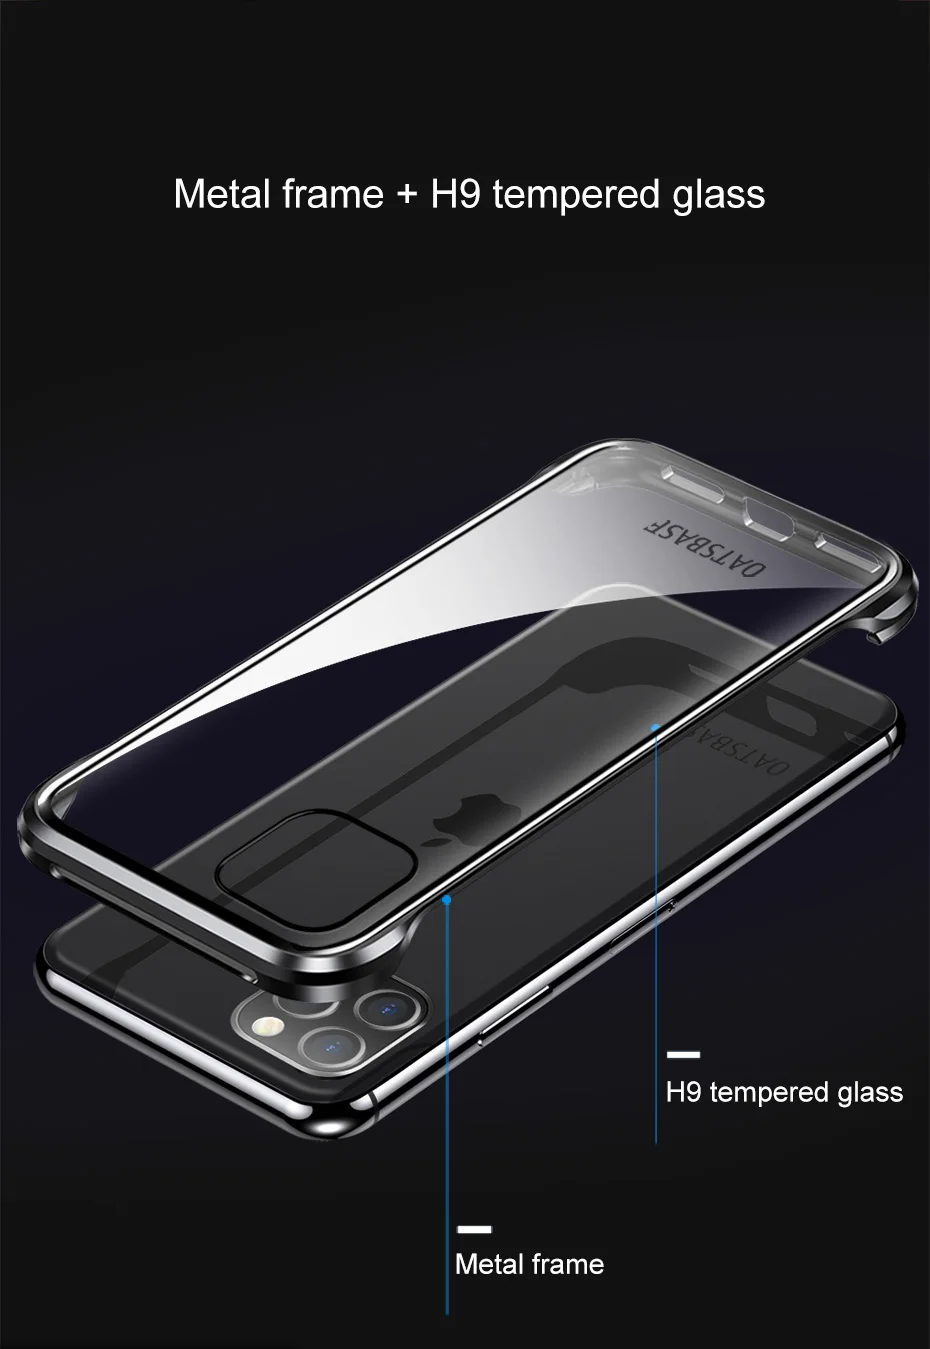 Oatsbasf, металлический чехол из закаленного стекла для телефона для Iphone 11, 11pro, Простой Прозрачный чехол для Iphone 11 pro max